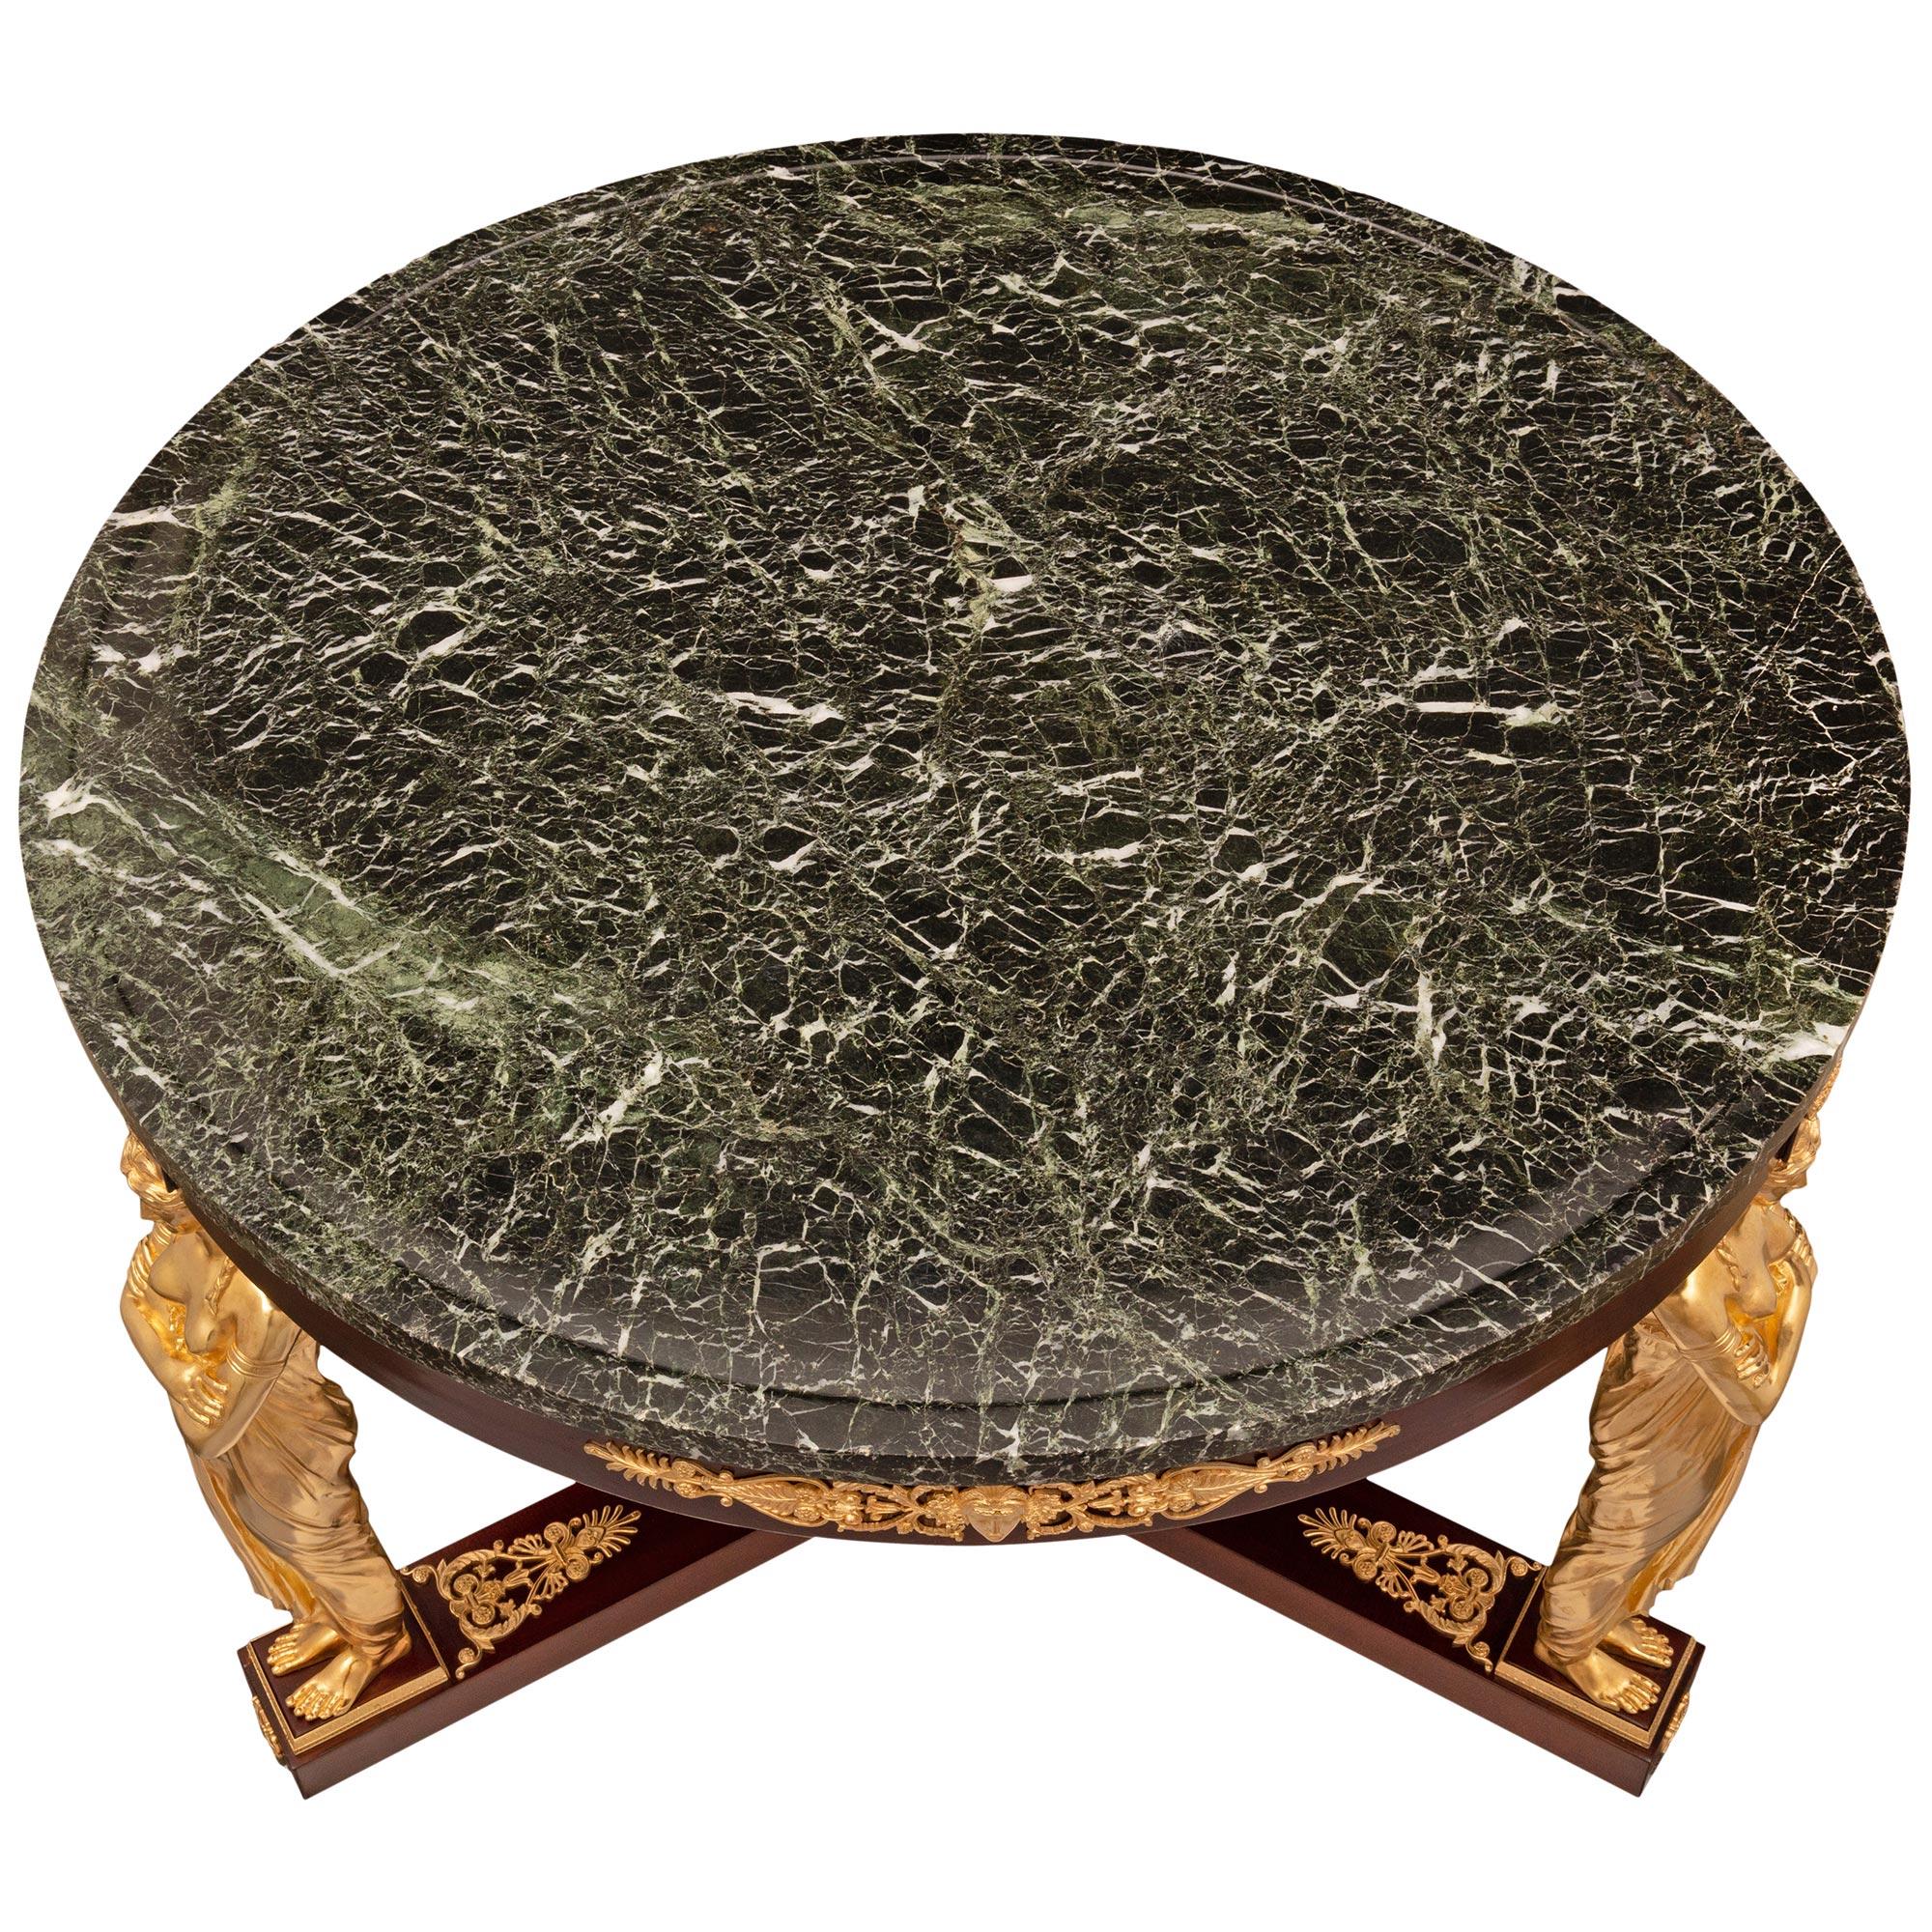 Ein spektakulärer französischer Mitteltisch im Empire-Stil des frühen 19. Jahrhunderts aus Mahagoni, Ormolu und Vert de Patricia-Marmor. Der eindrucksvolle runde Tisch in der Mitte wird von drei atemberaubenden Ormolu-Stützen angehoben, auf denen